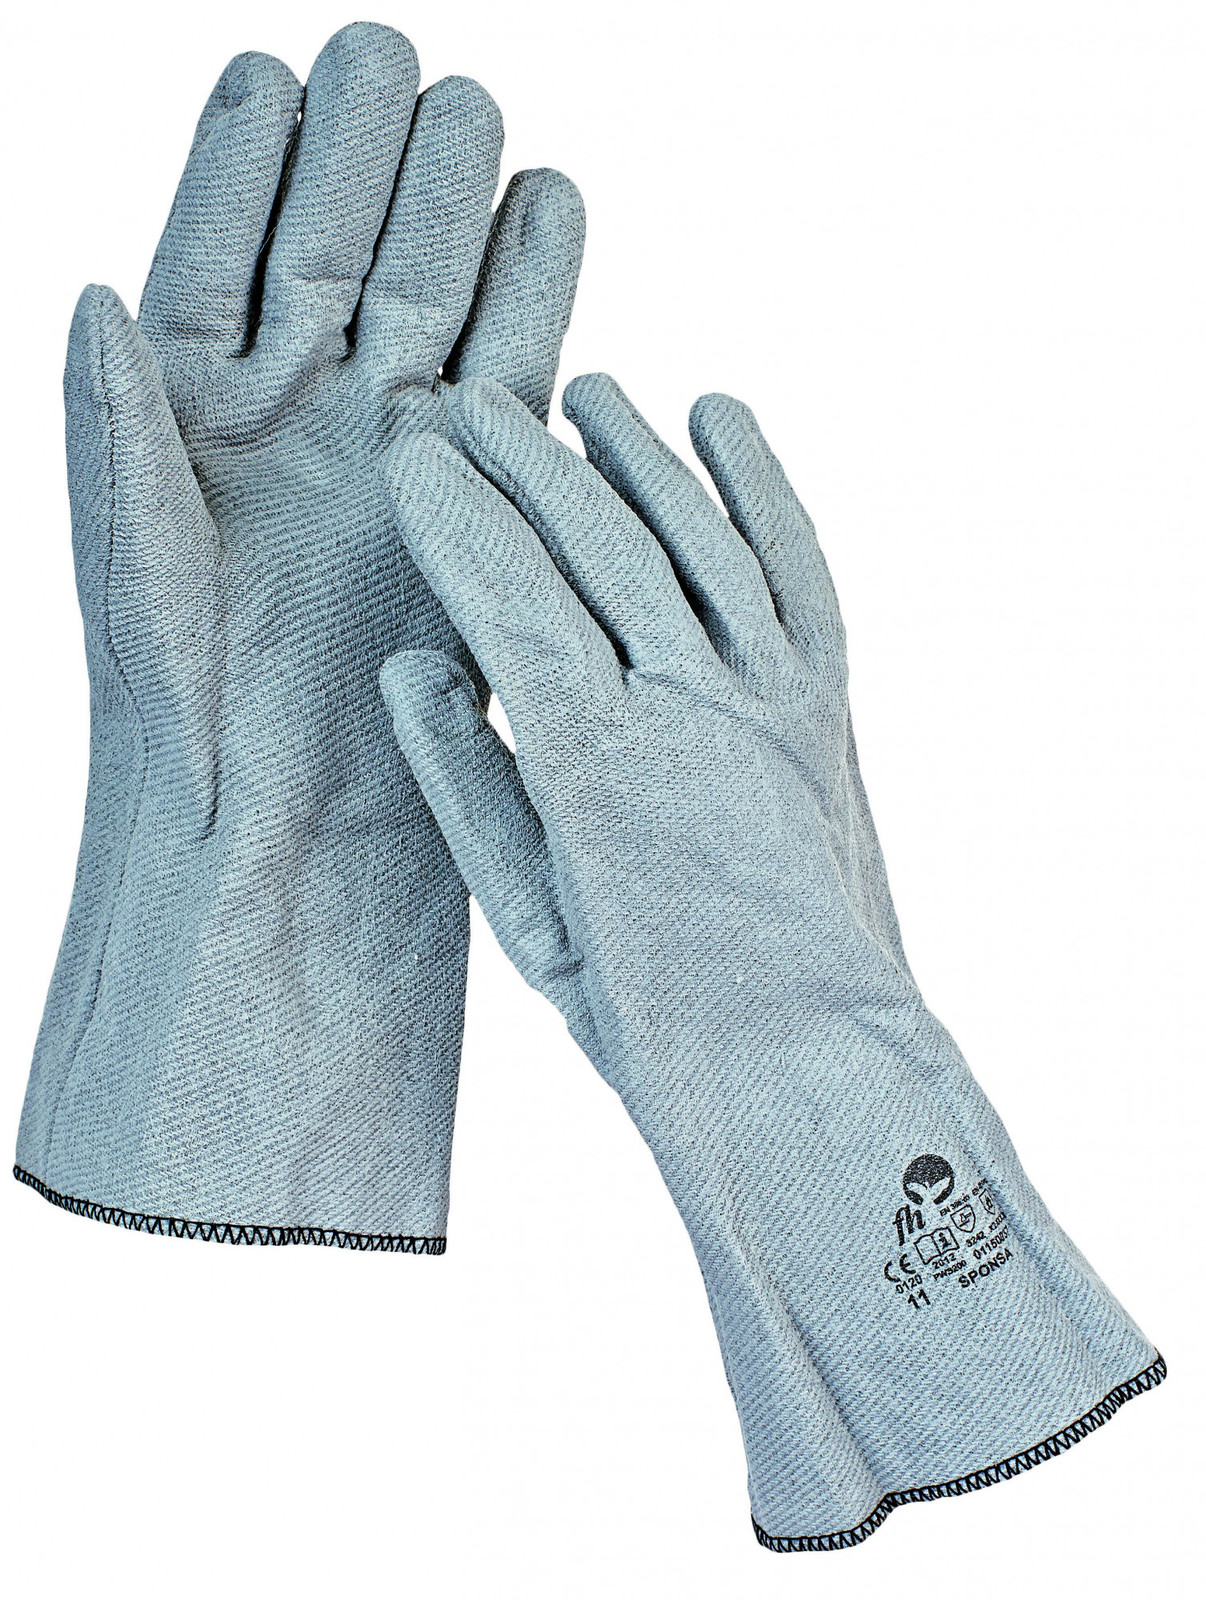 Teplovzdorné rukavice Sponsa do 250 °C - veľkosť: 11/XXL